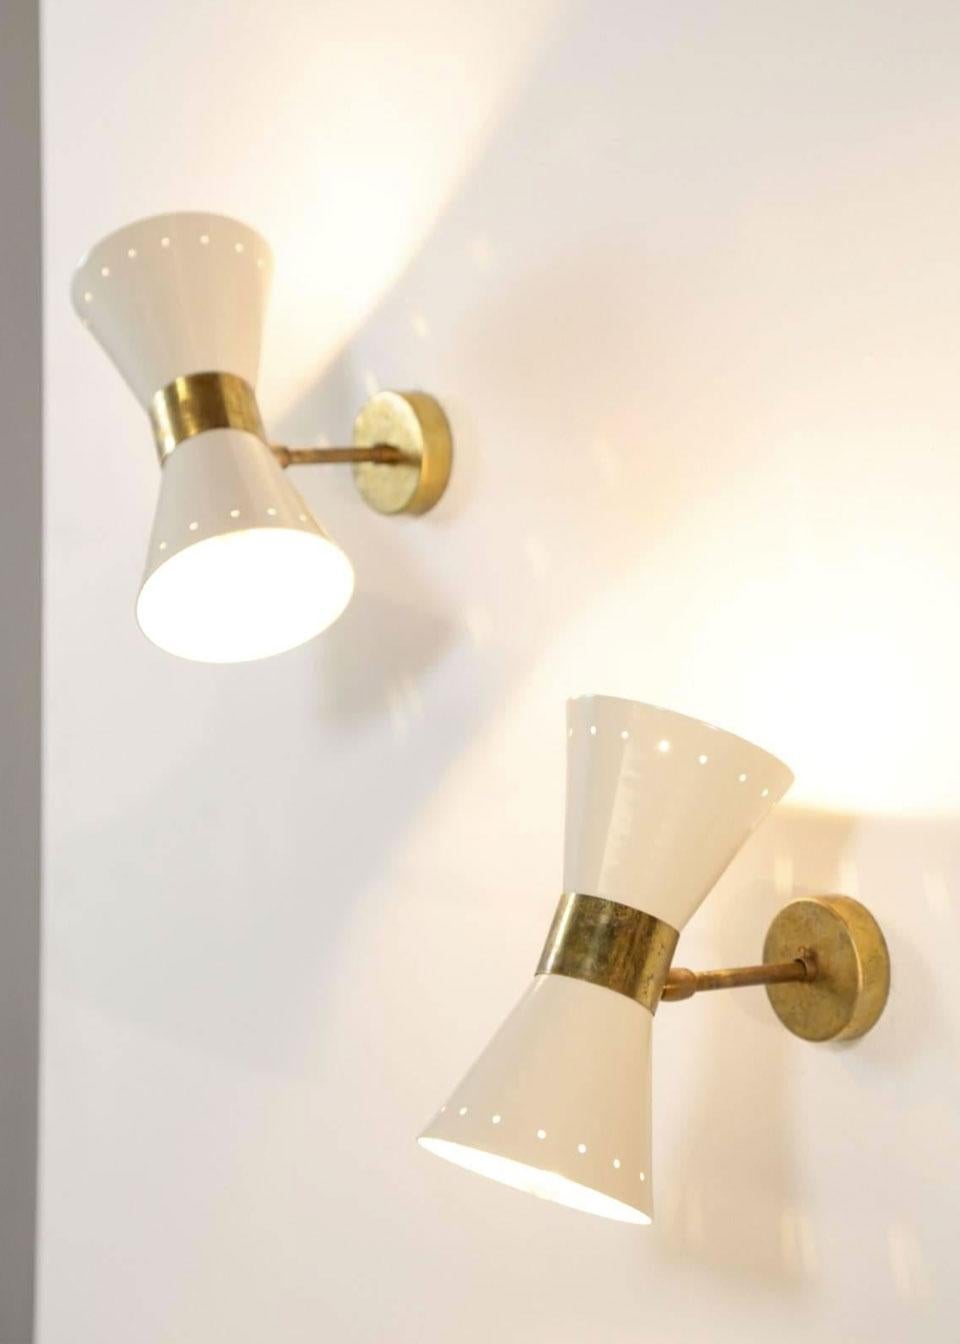 1 of 6 Italian Modern Design Wall Light Sconces Stilnovo Style Ivory White Brass For Sale 4